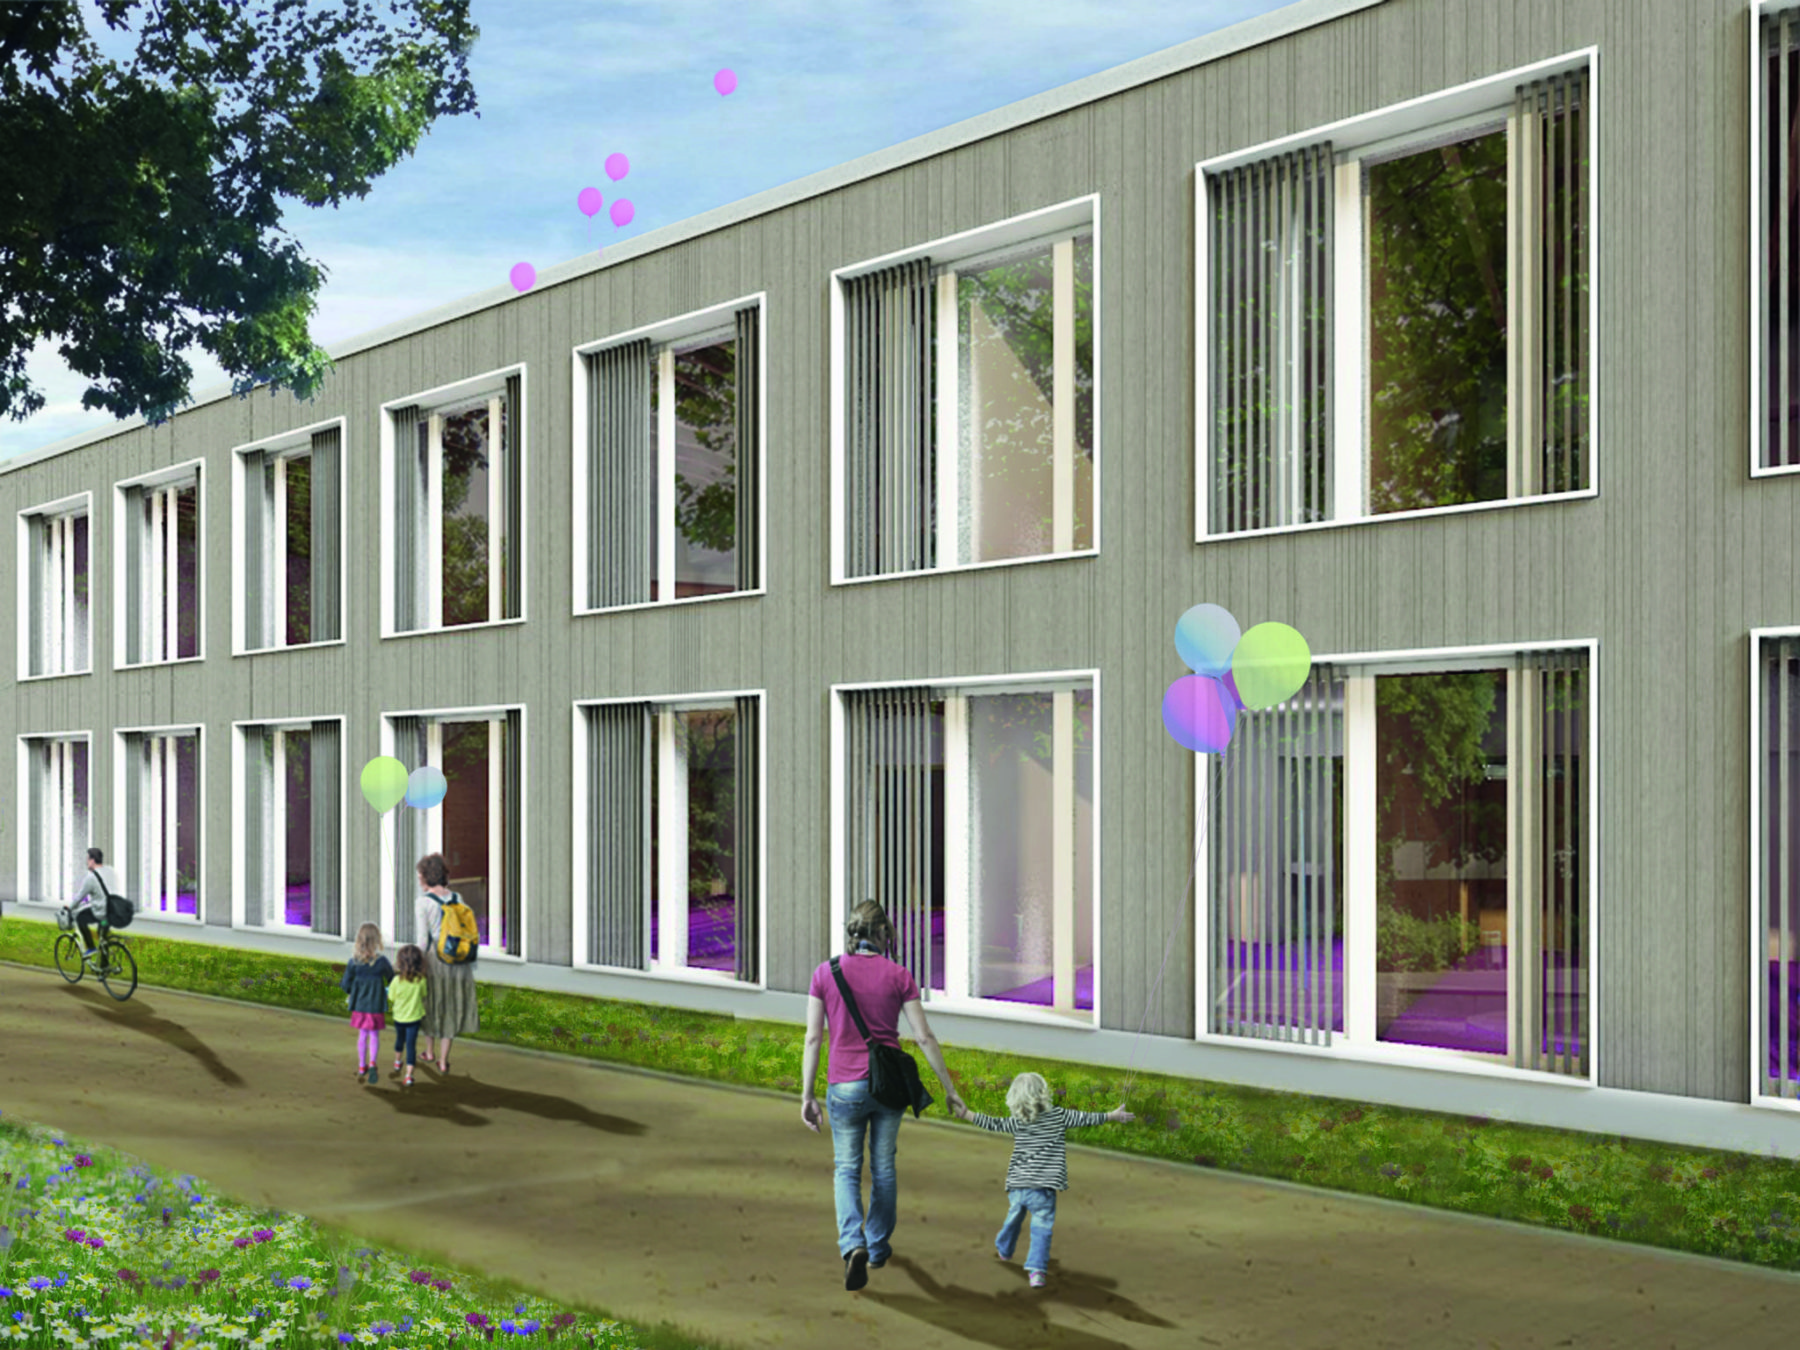 Mathilde-Anneke-Gesamtschule Münster / Bildquelle: farwick + grote Architekten BDA